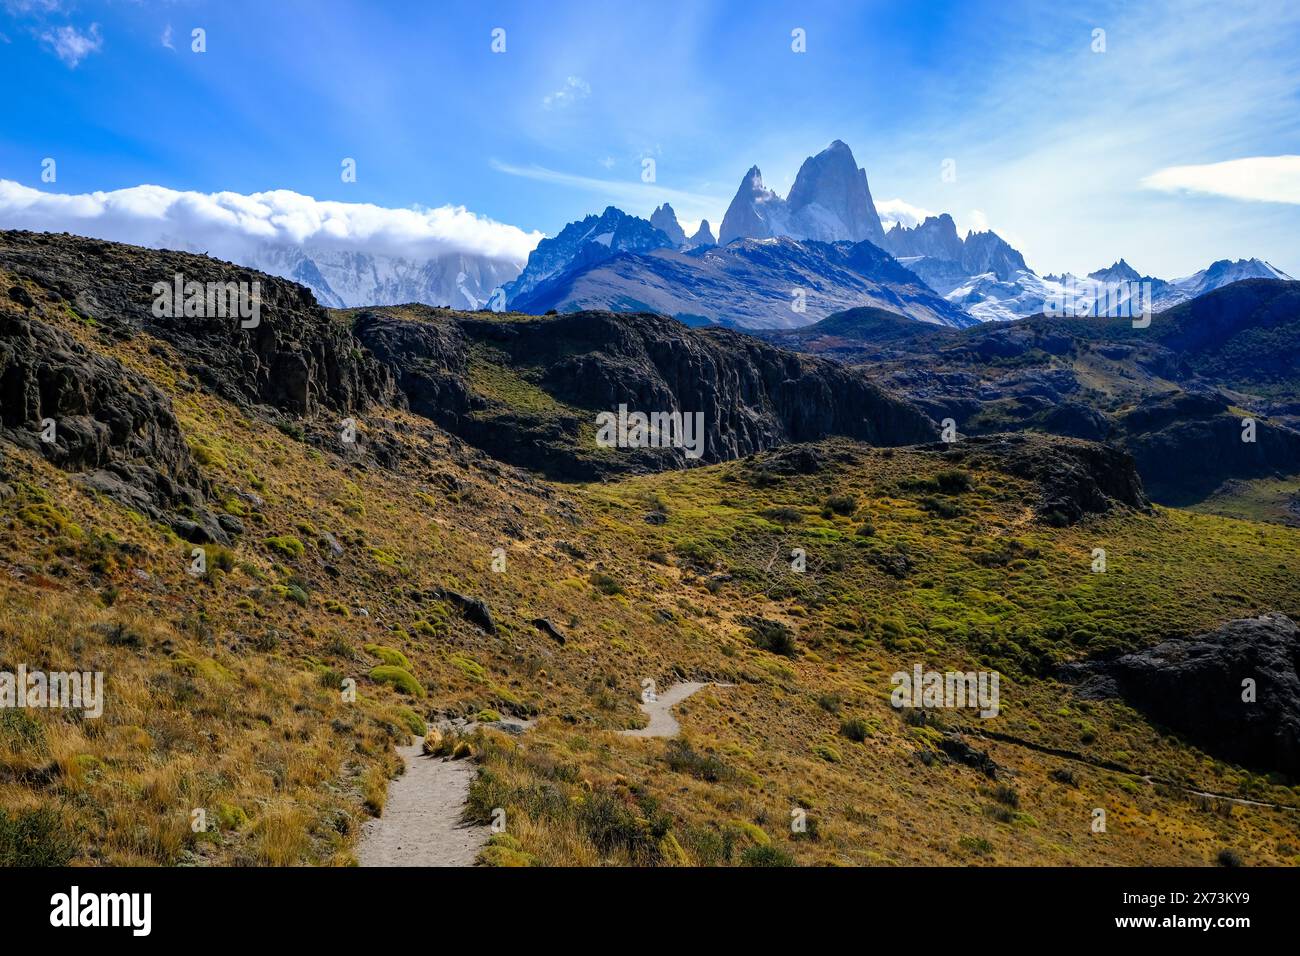 El Chaltén, Patagonien, Argentinien - El Chaltén mit Blick auf das Fitz Roy-Massiv. El Chaltén bietet den direktesten Zugang zu den Bergmassiven von Stockfoto